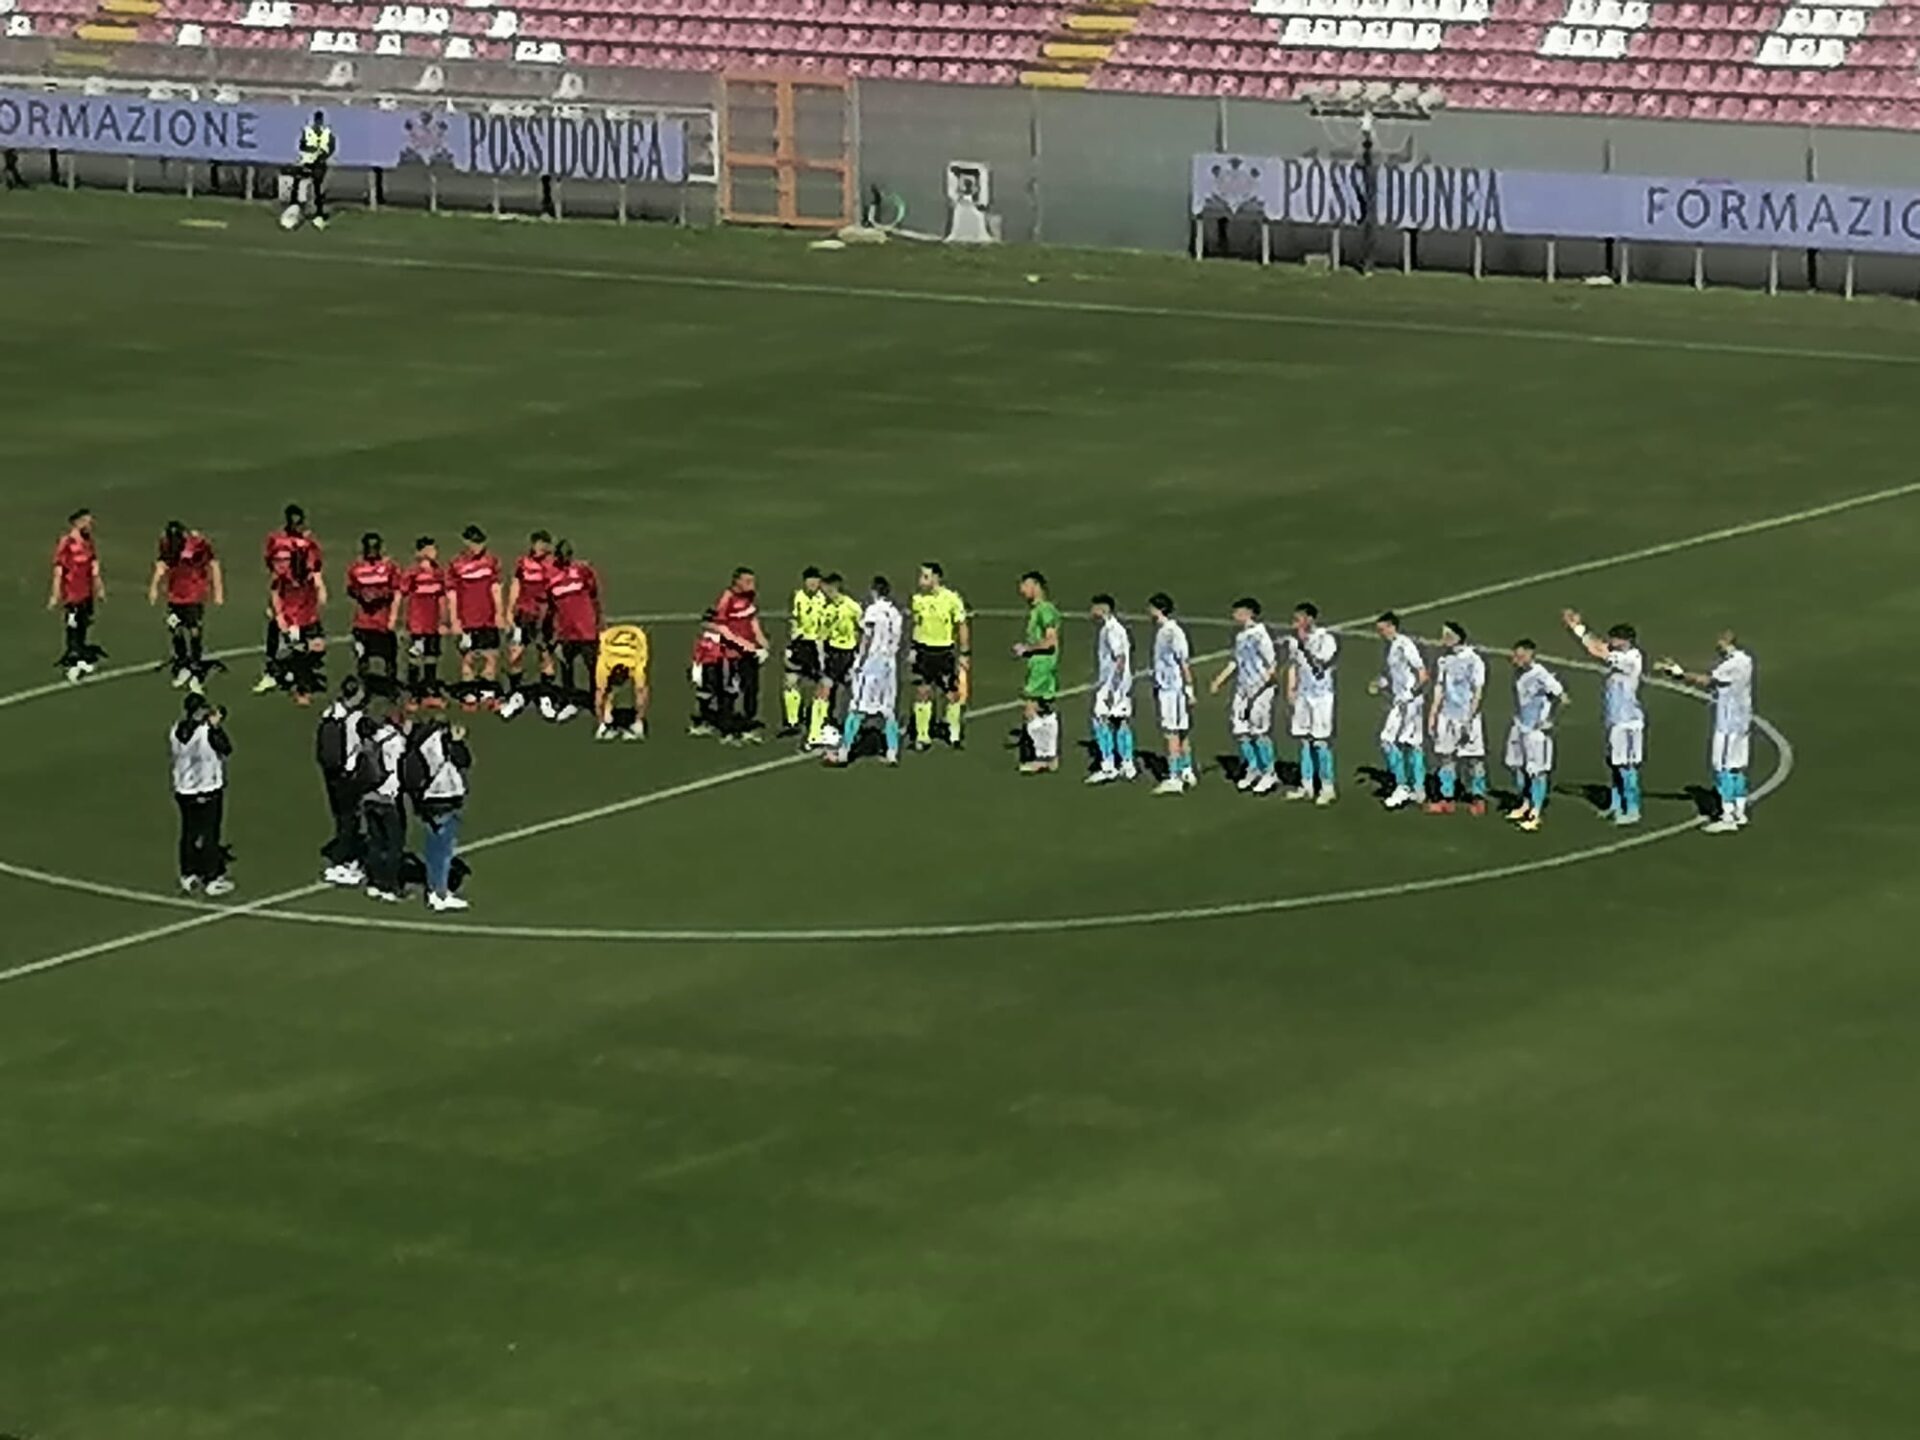 Lfa Reggio Calabria-Akragas, cinque gol per dimenticare Vibo